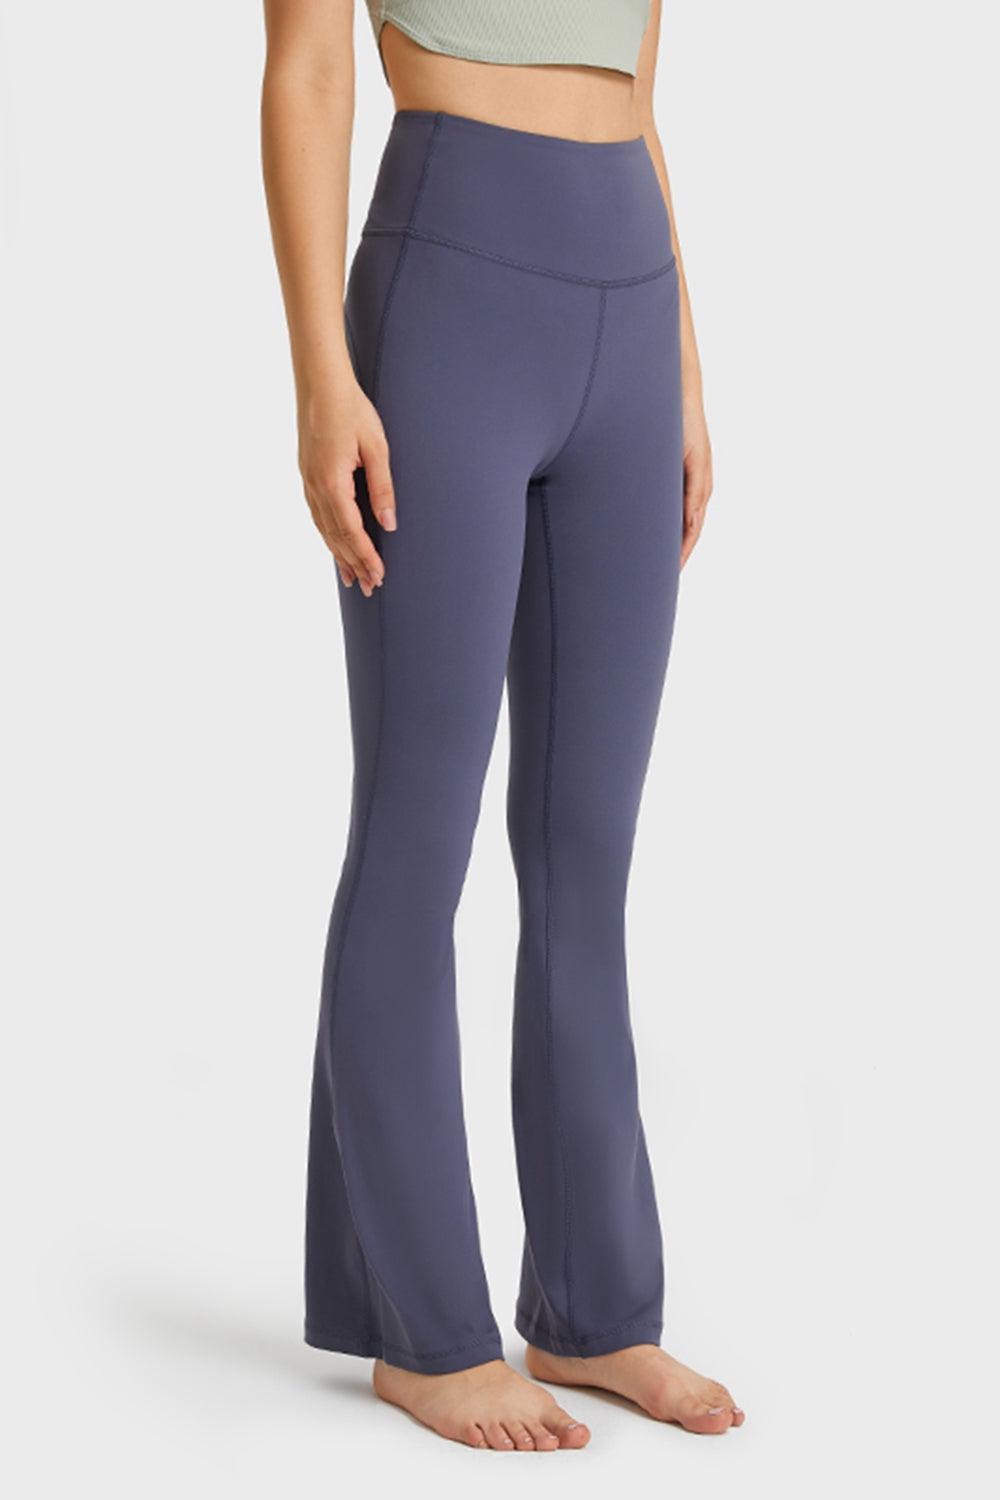 Elastic Waist Flare Yoga Pants-BOTTOM SIZES SMALL MEDIUM LARGE-[Adult]-[Female]-Blue Zone Planet